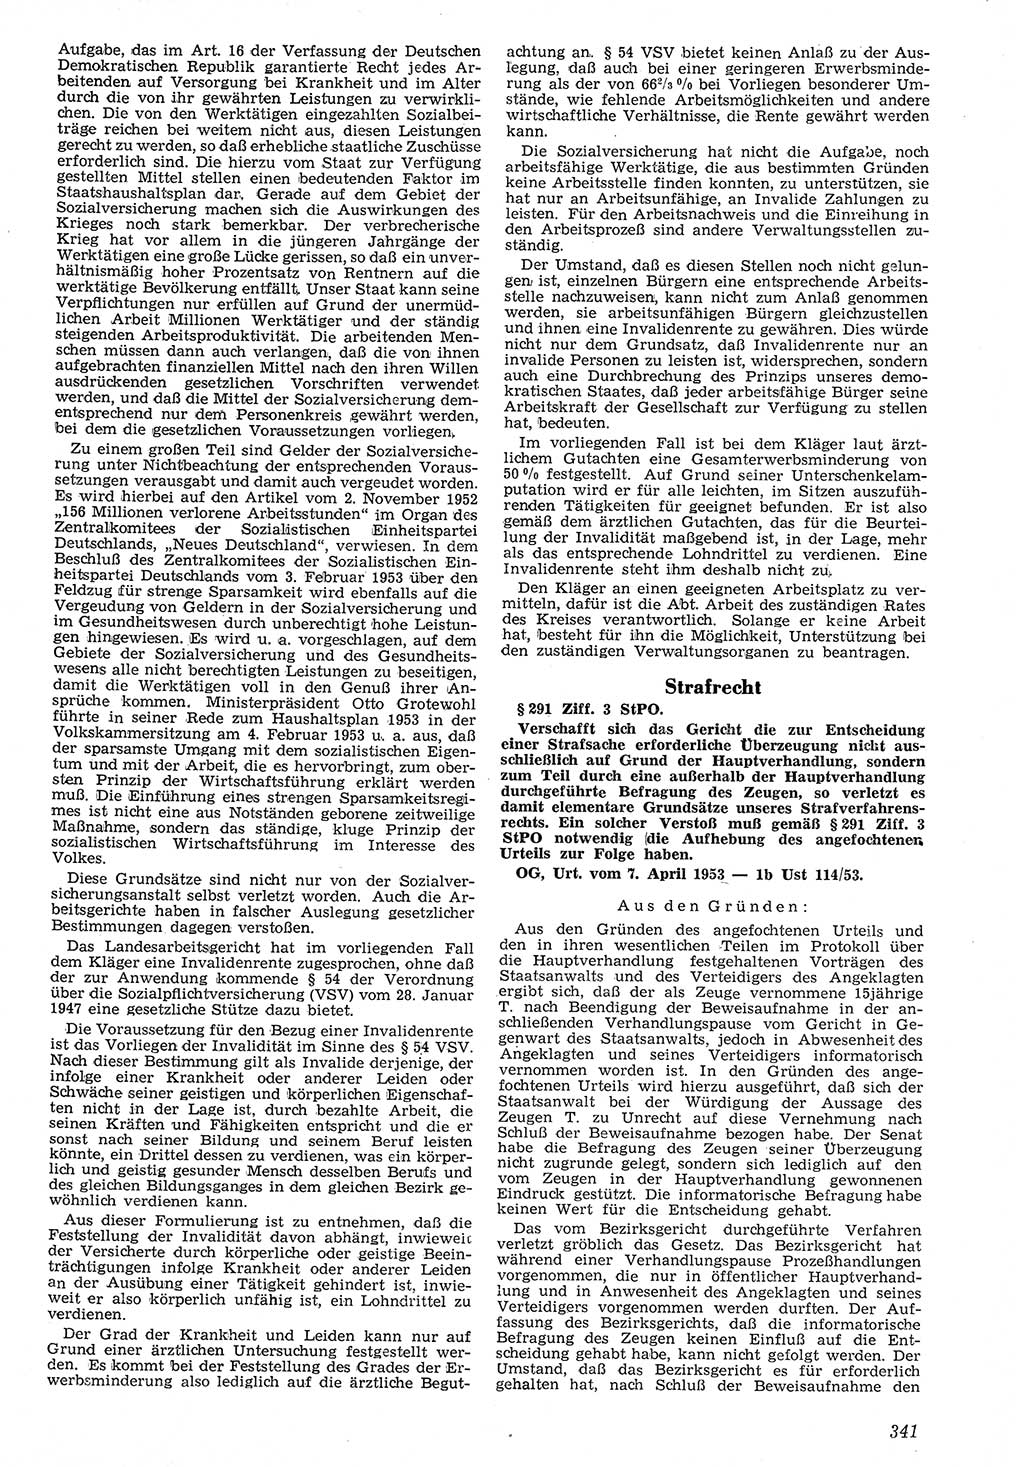 Neue Justiz (NJ), Zeitschrift für Recht und Rechtswissenschaft [Deutsche Demokratische Republik (DDR)], 7. Jahrgang 1953, Seite 341 (NJ DDR 1953, S. 341)